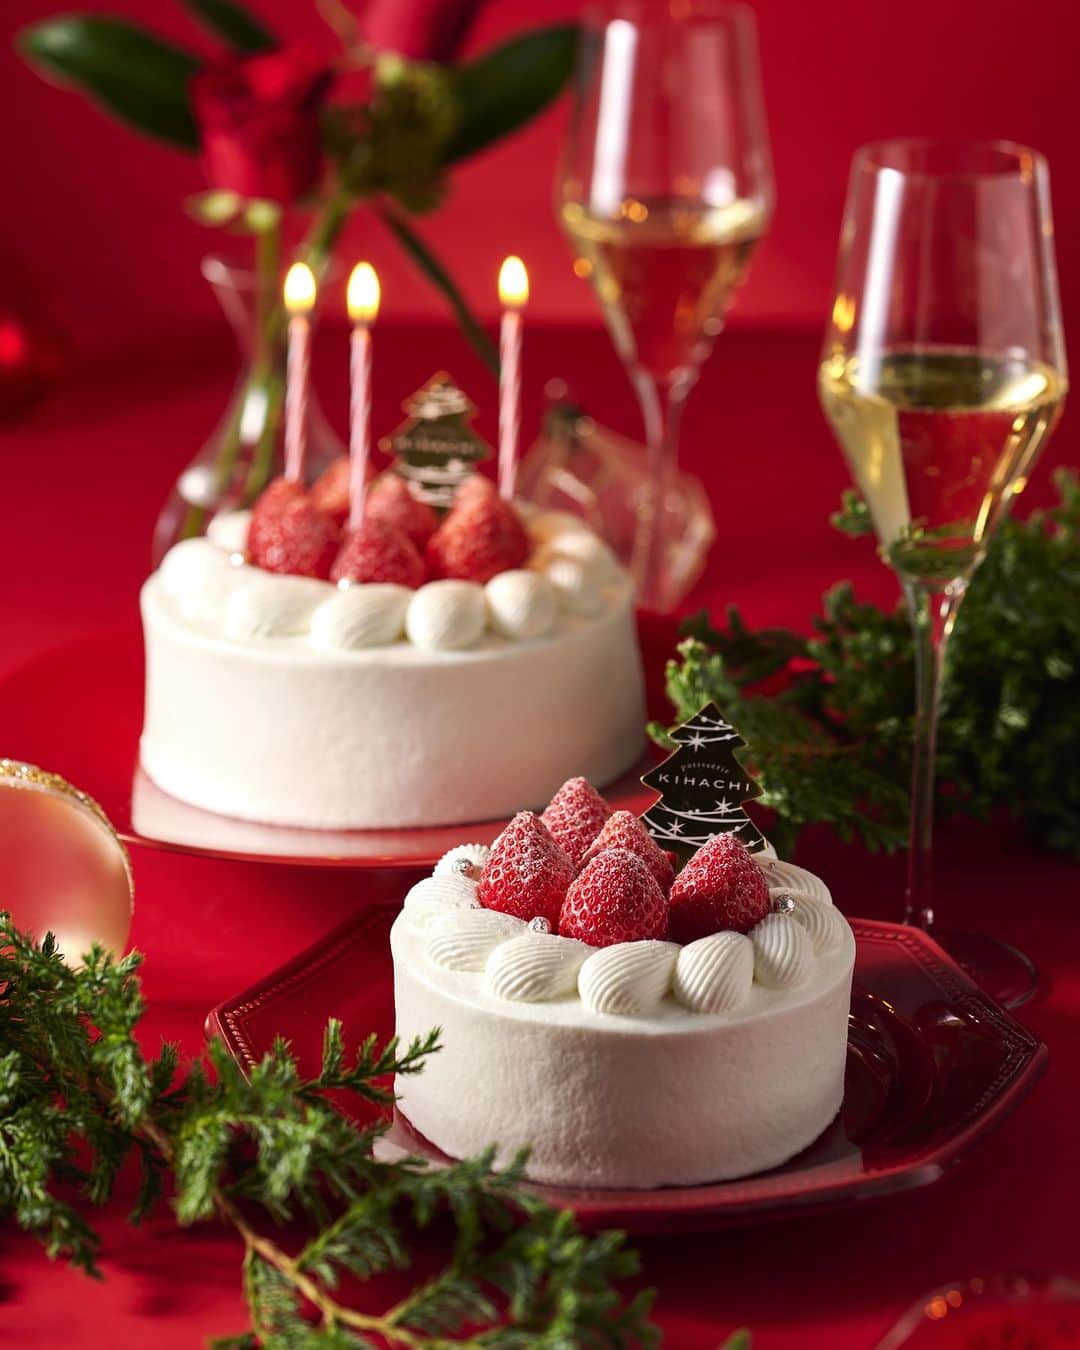 KIHACHI公式Instagramのインスタグラム：「【パティスリー キハチ】 クリスマスケーキのご予約承ります🎄  2023 Precious Christmas！  パティスリー キハチの店頭では、クリスマスケーキのご予約を承っております。 大切な人や家族と楽しむクリスマスは、パティスリー キハチのクリスマスケーキをかこんで幸せなひとときを🦢  シャンティーと苺が際立つクリスマスショートや、グラサージュが美しいベリーエタンセル、ブッシュドノエルなど取り揃えました。  ■ご予約期間 2023年11月1日(水)～2023年12月17日(日) ⁡ ■お受け渡し期間（各店営業時間内） 2023年12月23日(土)～2023年12月25日(月)  ■クリスマスケーキご予約受付店舗 ・パティスリー キハチ 東大島 ・パティスリー キハチ アトレ恵比寿 ・パティスリー キハチ 西武渋谷店  ※詳しくは、KIHACHIホームページをご確認くださいませ。 ※パティスリー キハチ東京ギフトパレット店では、ご予約を承っておりません。予めご了承くださいませ。  #KIHACHI #キハチ #KIHACHICAFE #キハチカフェ #patisseriekihachi #パティスリーキハチ #パティスリーキハチ東大島 #東大島 #パティスリーキハチアトレ恵比寿 #恵比寿 #パティスリーキハチ西武渋谷店 #渋谷 #パティスリーキハチ東京ギフトパレット #東京駅 #クリスマス #クリスマスケーキ #クリスマスケーキ予約 #クリスマスケーキ2023」